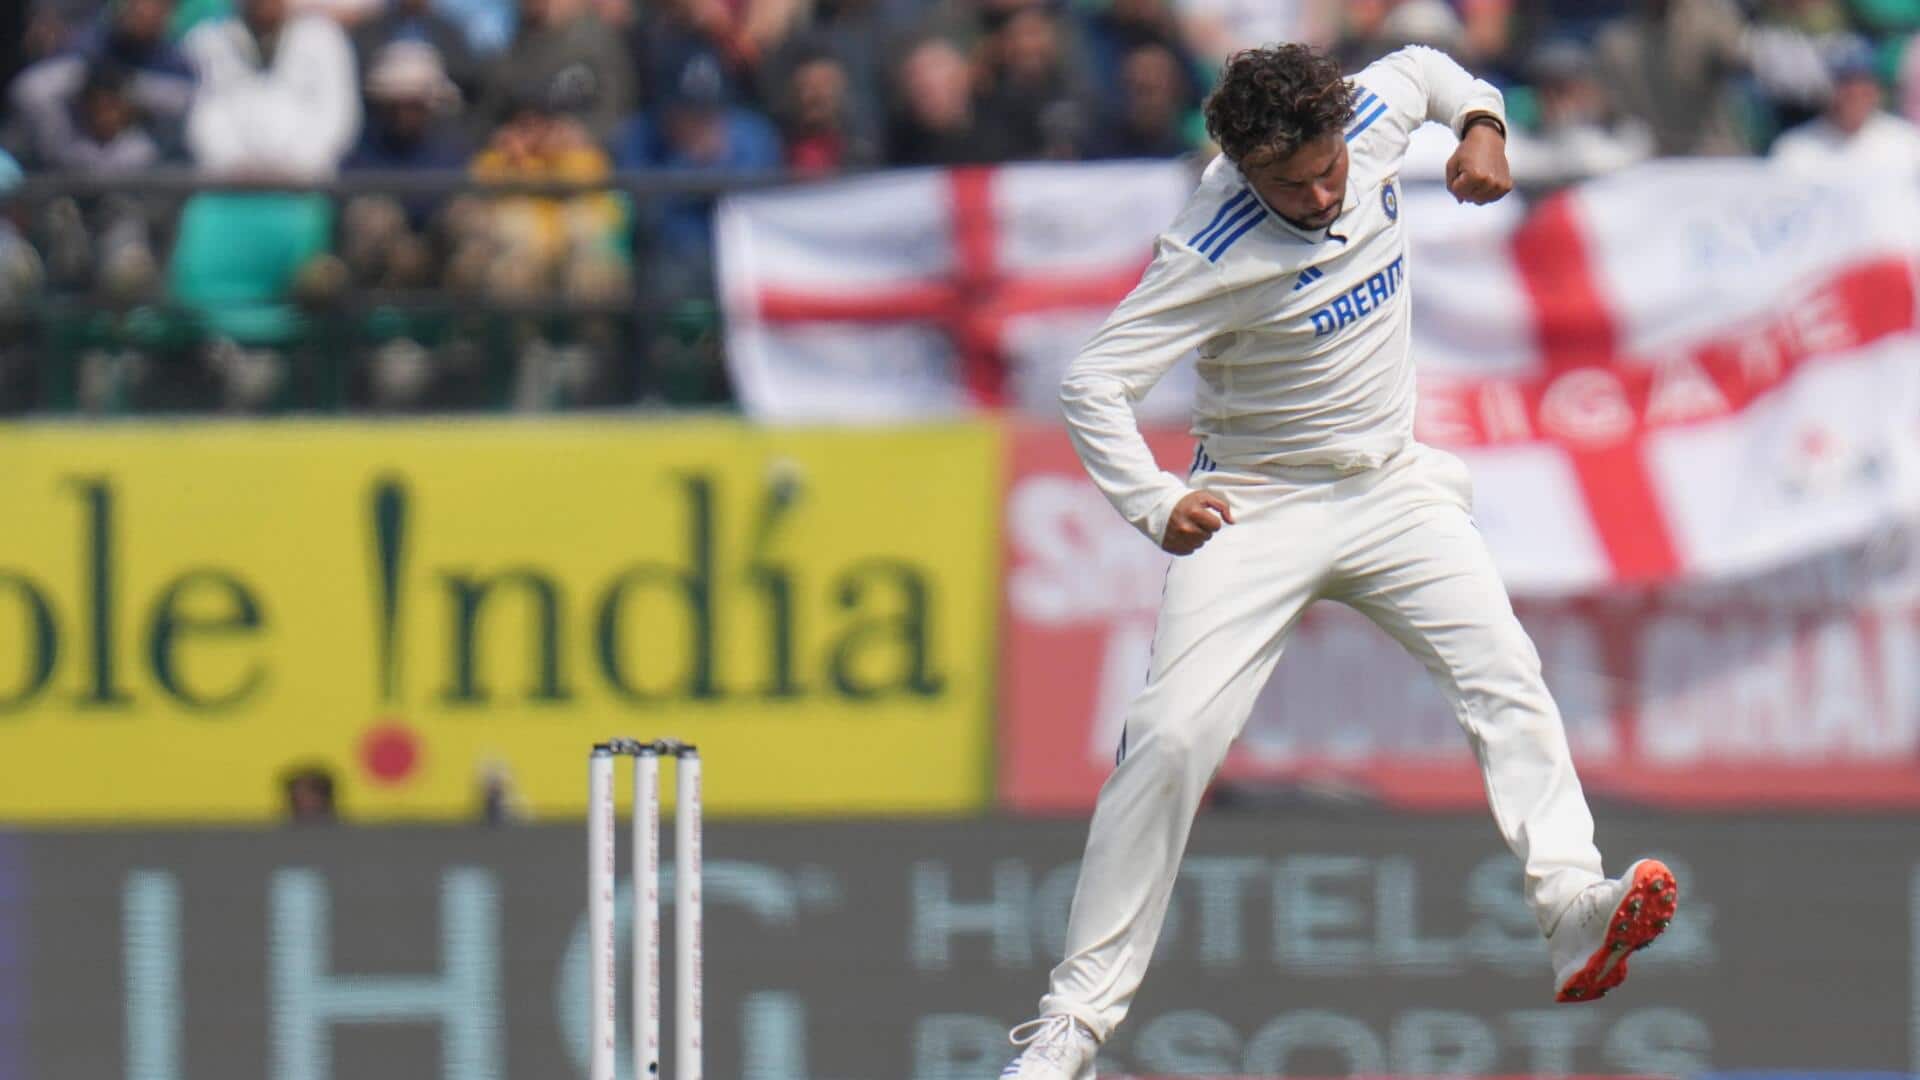 धर्मशाला टेस्ट: कुलदीप यादव ने इंग्लैंड के खिलाफ पहली बार झटके 5 विकेट, ये बनाए रिकॉर्ड्स